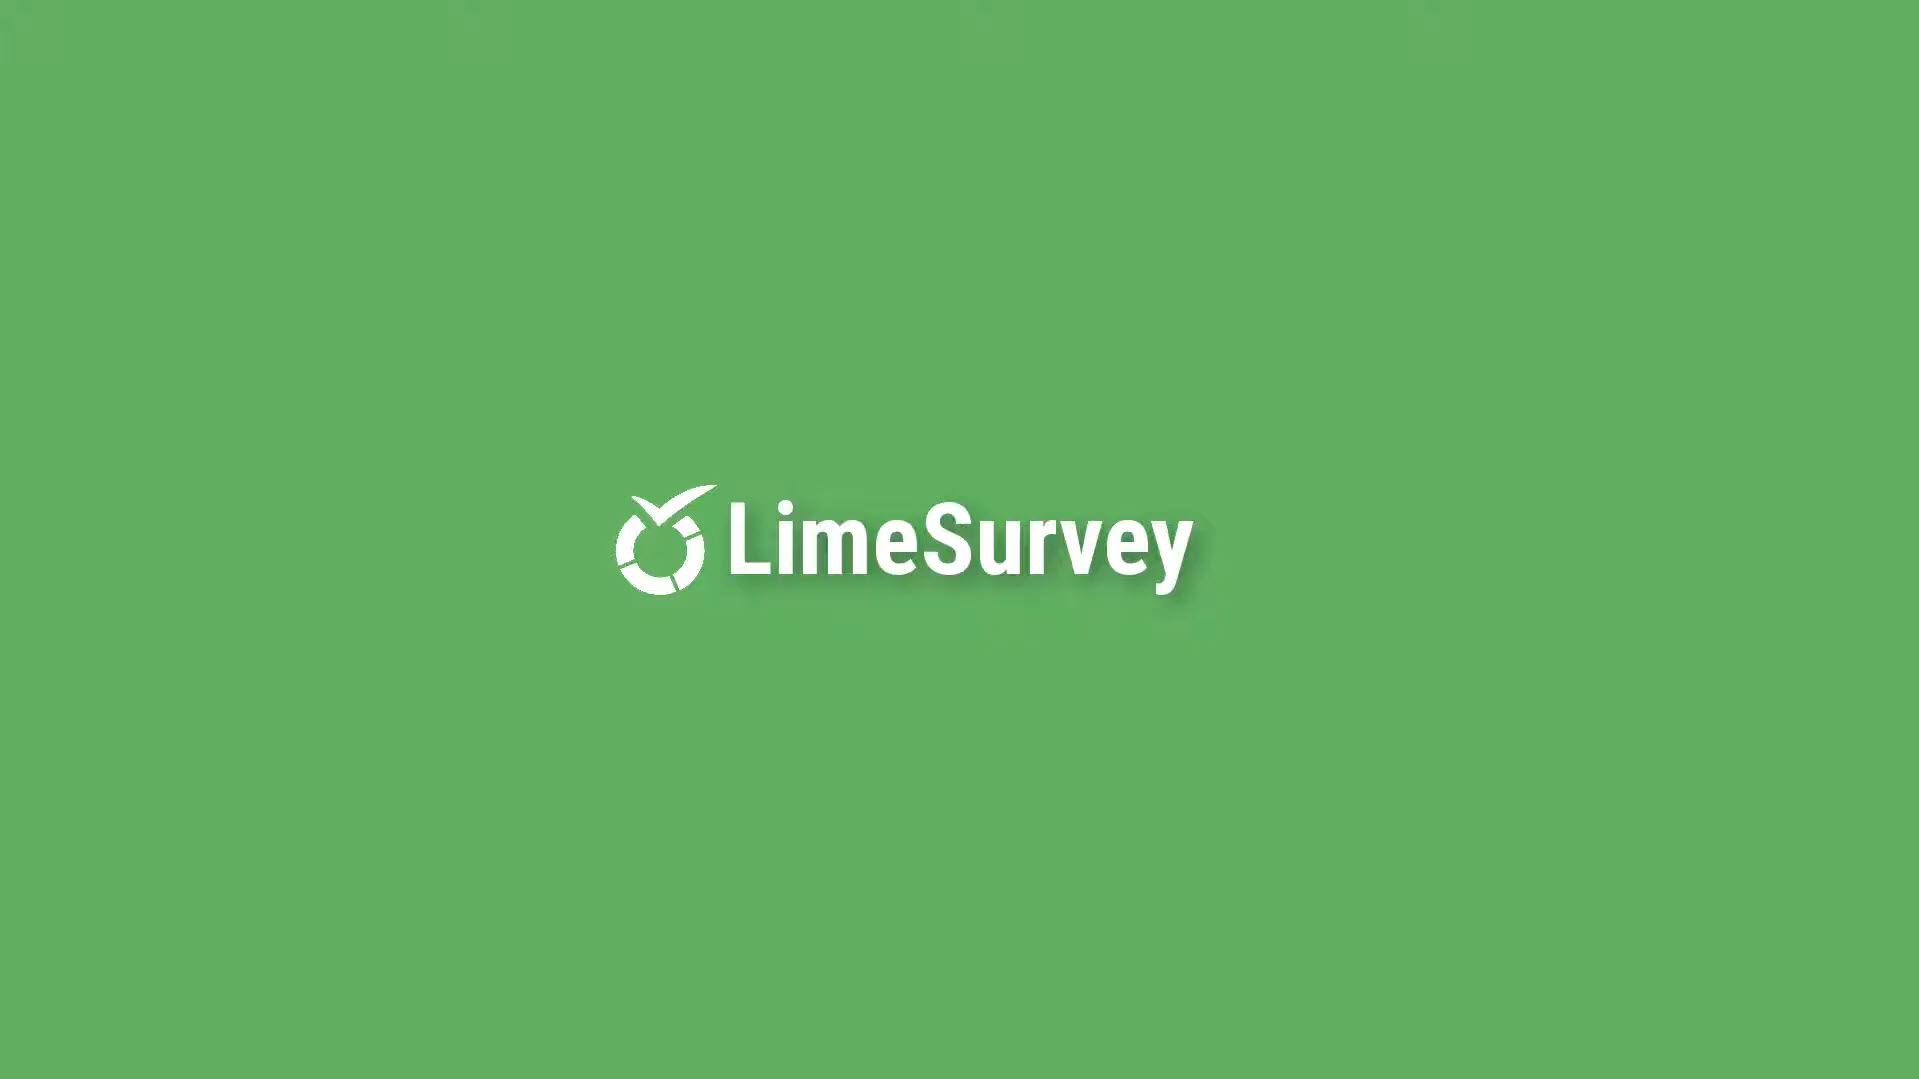 LimeSurvey